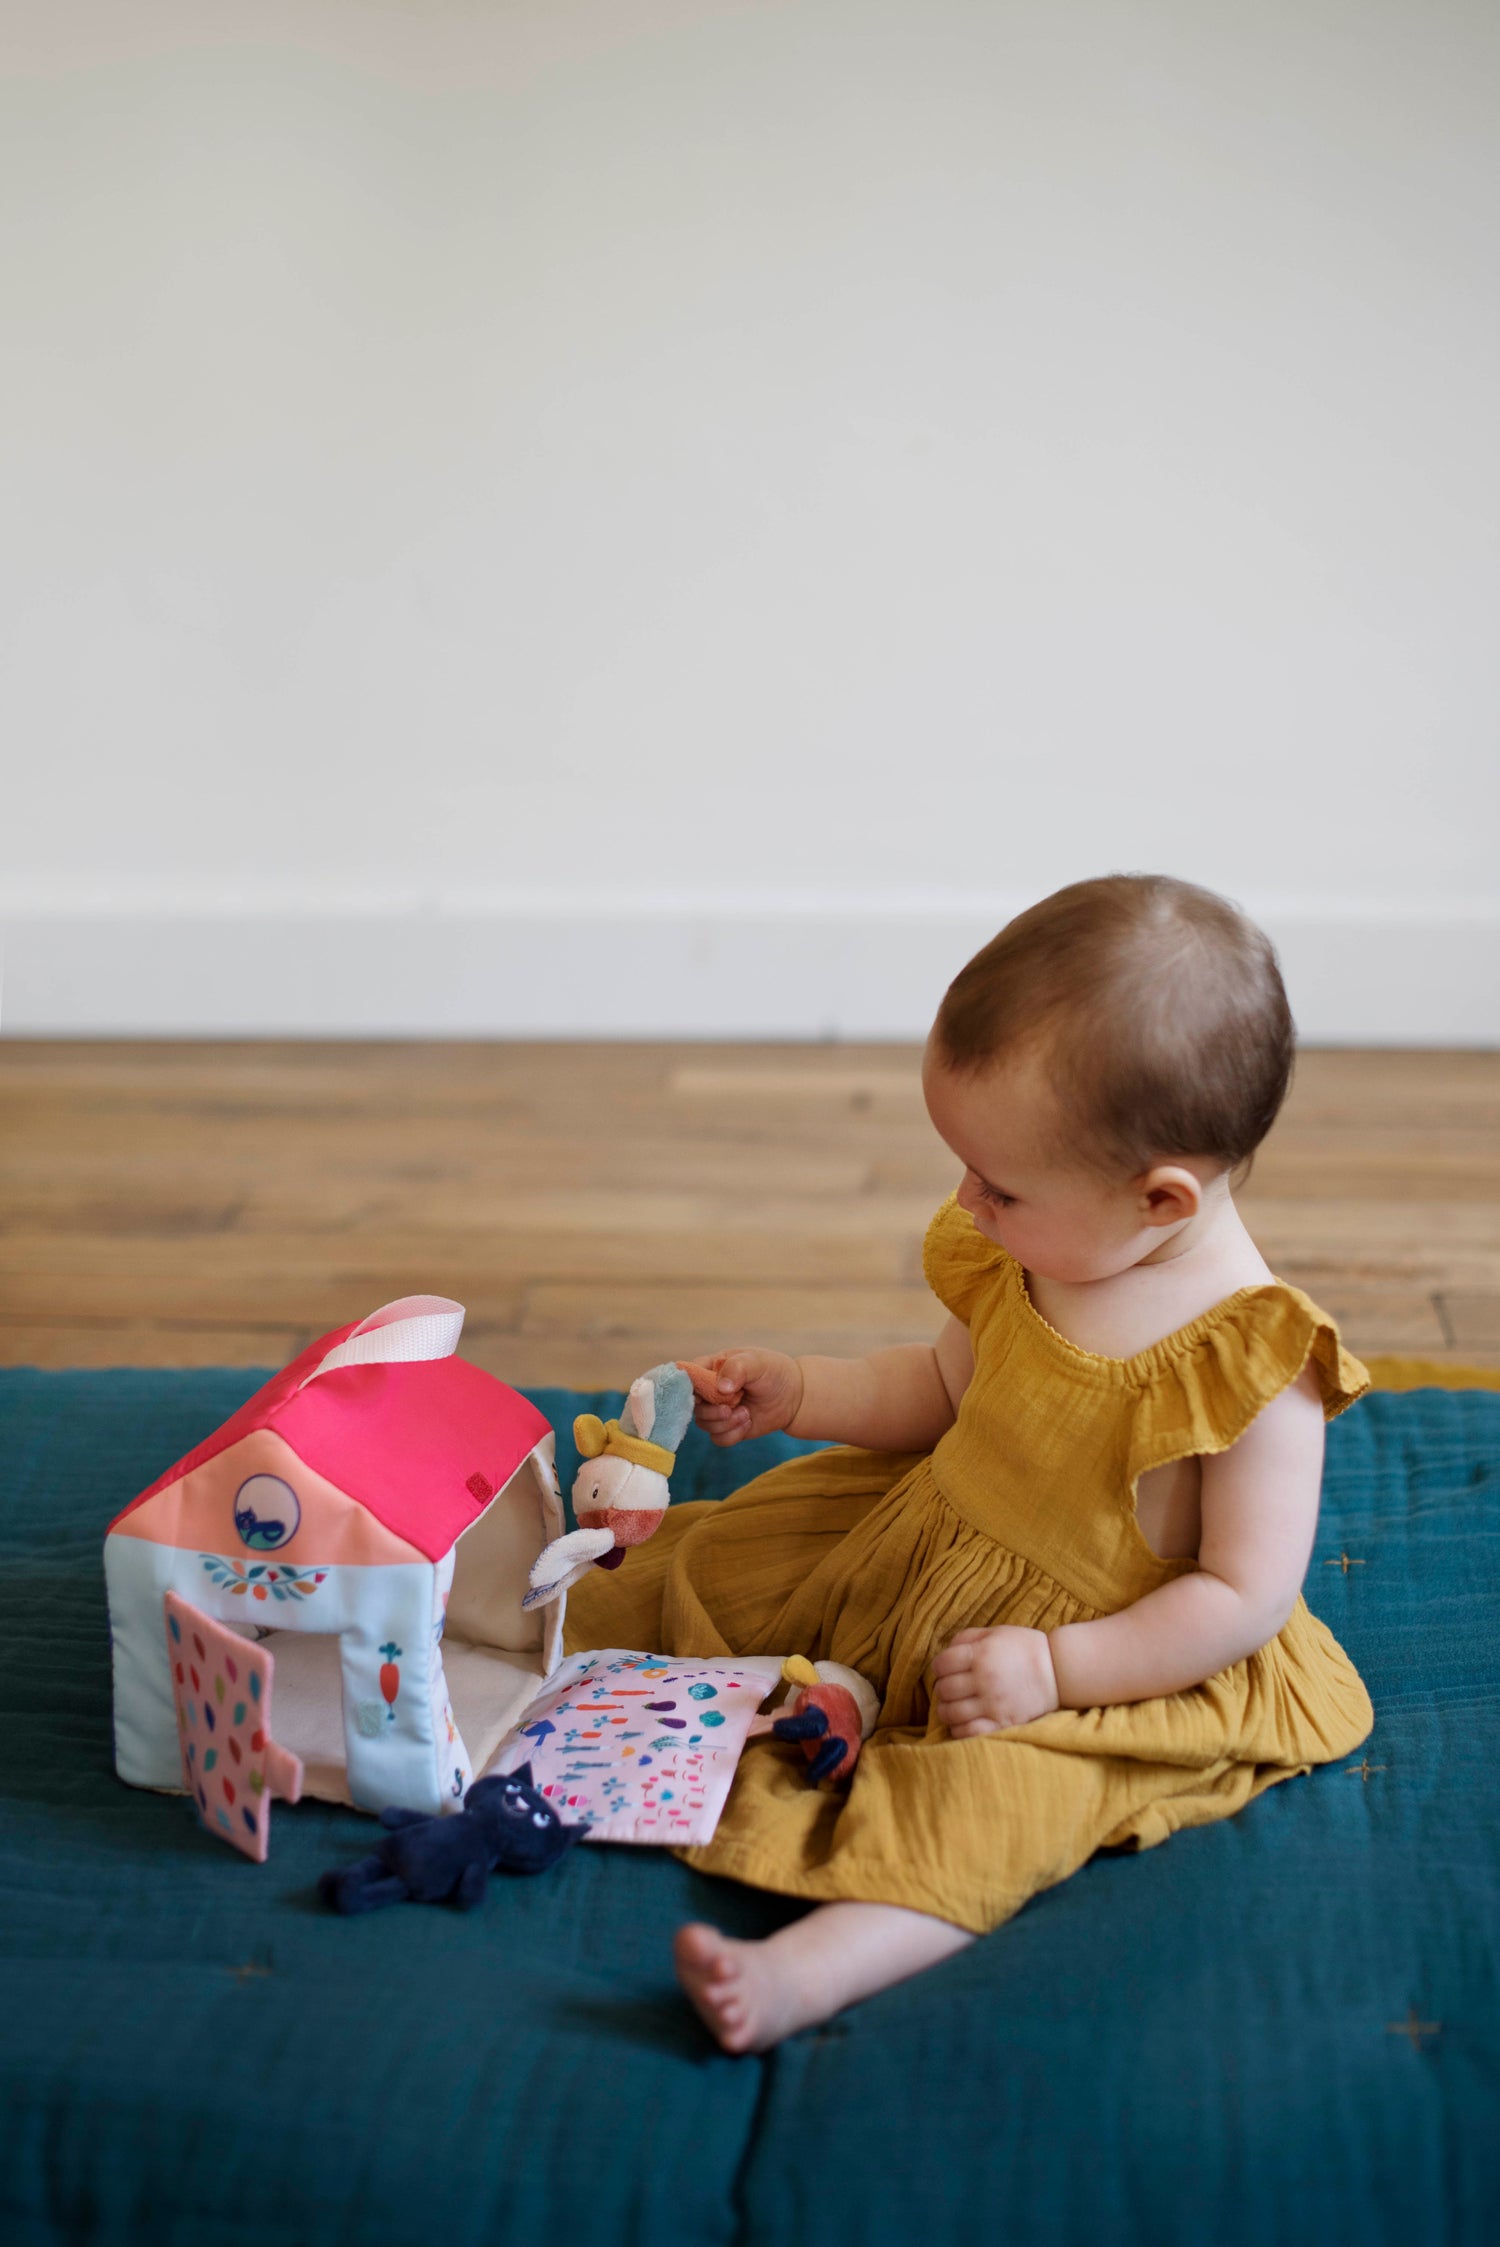 Maison d'activités en tissu pour bébé : sur un tapis d'éveil, une petite fille d'environ 9 mois manipule les trois petites peluches et la maison en tissu de Gabin le Lapin